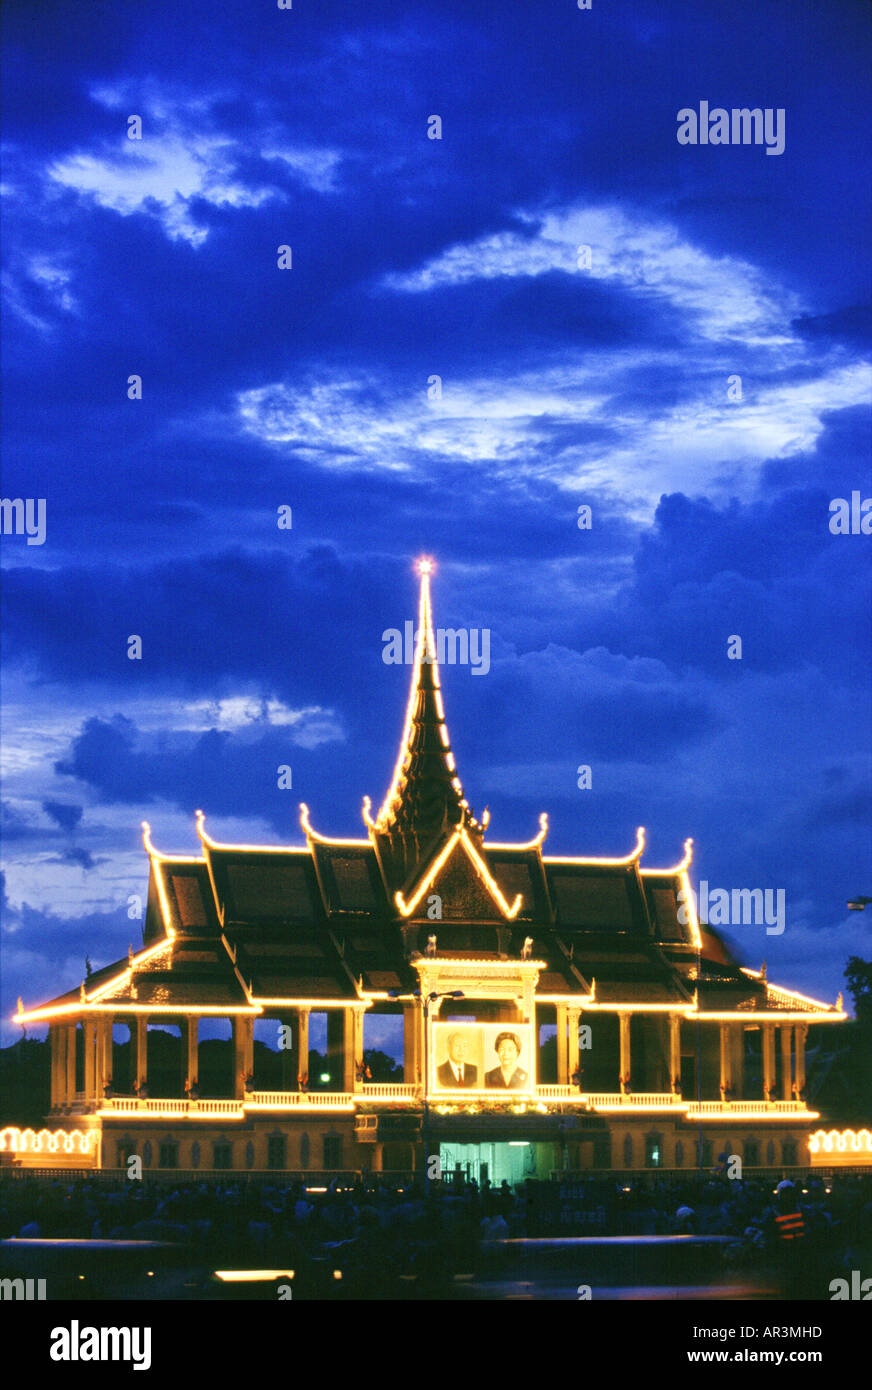 Der beleuchtete königliche Palast bei Nacht, Phnom Penh, Kambodscha, Asien Stockfoto